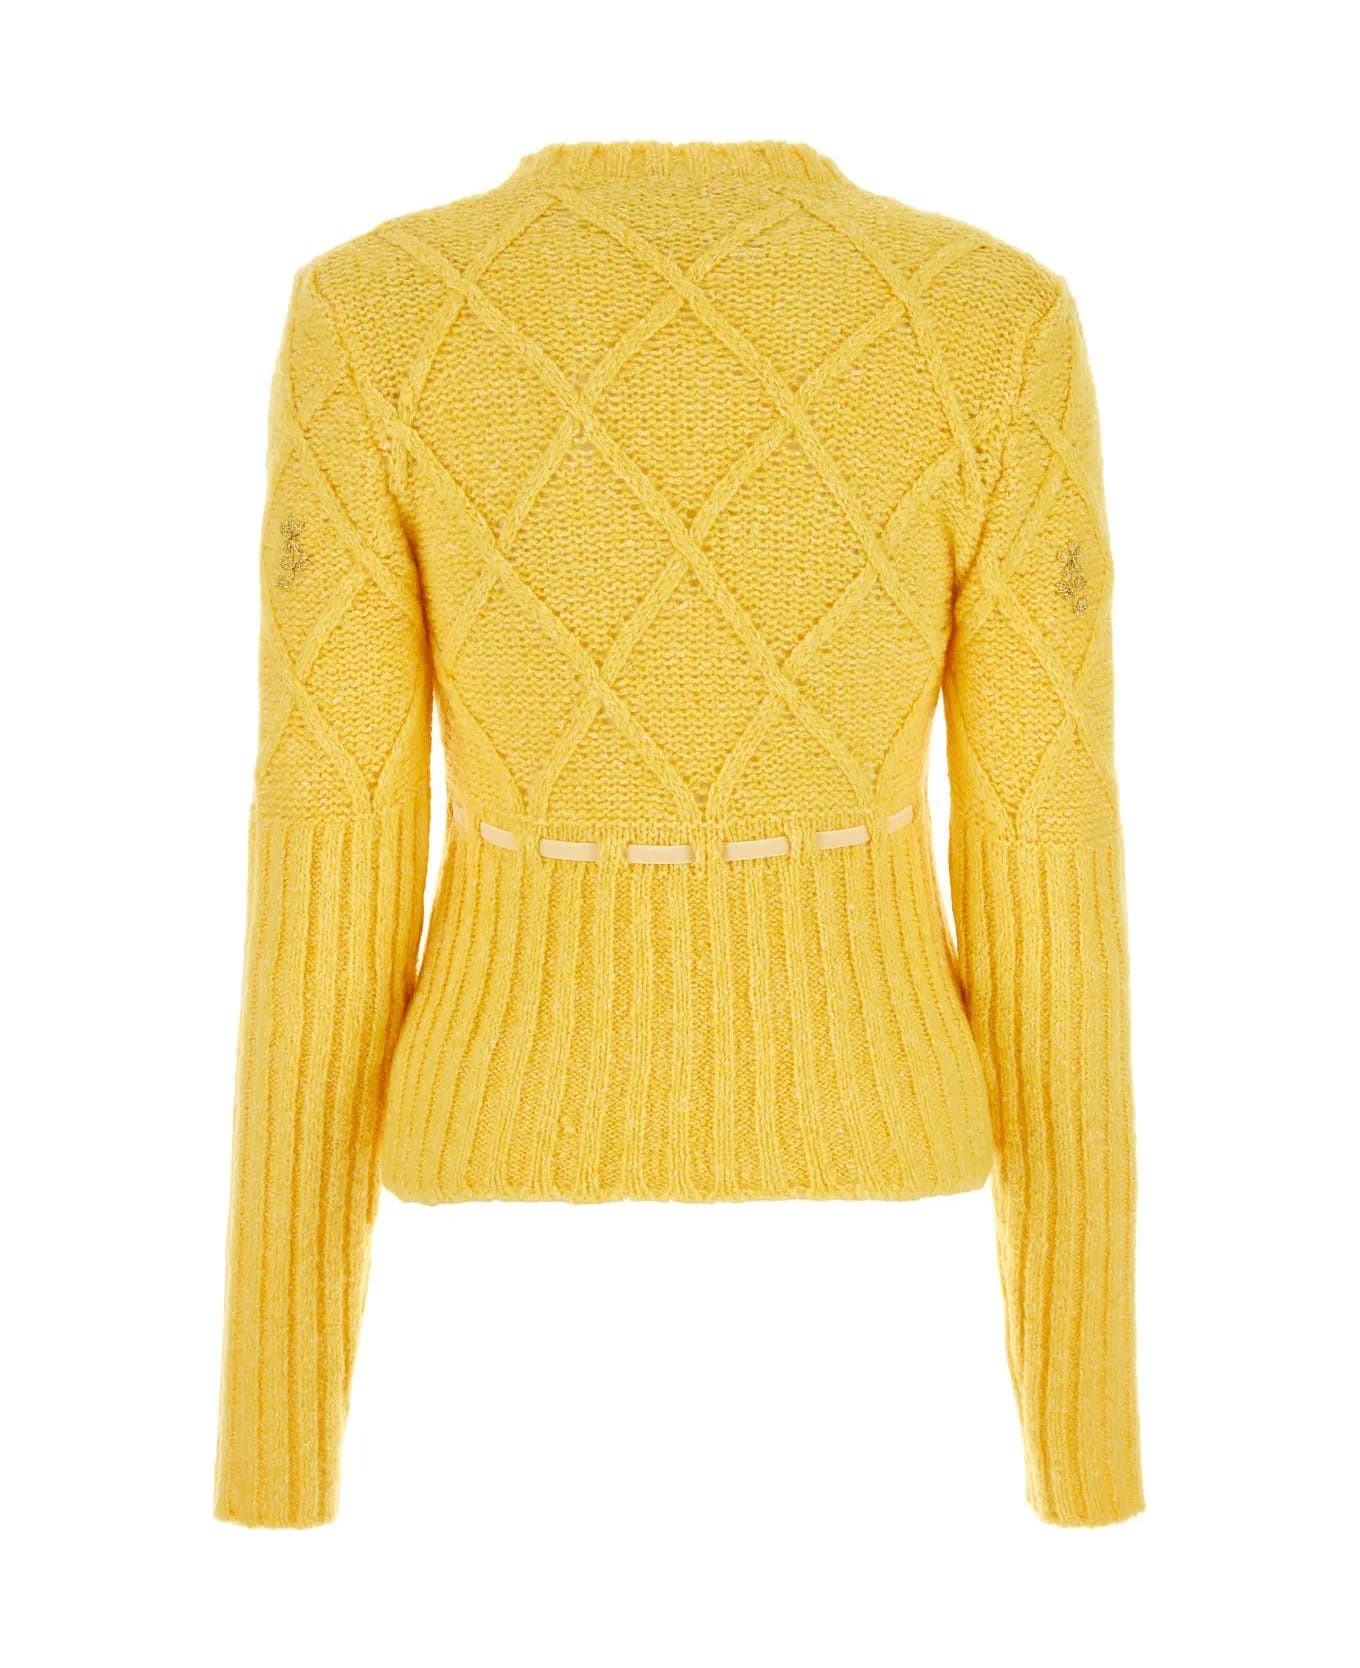 Cormio Yellow Wool Blend Sweater - yellow